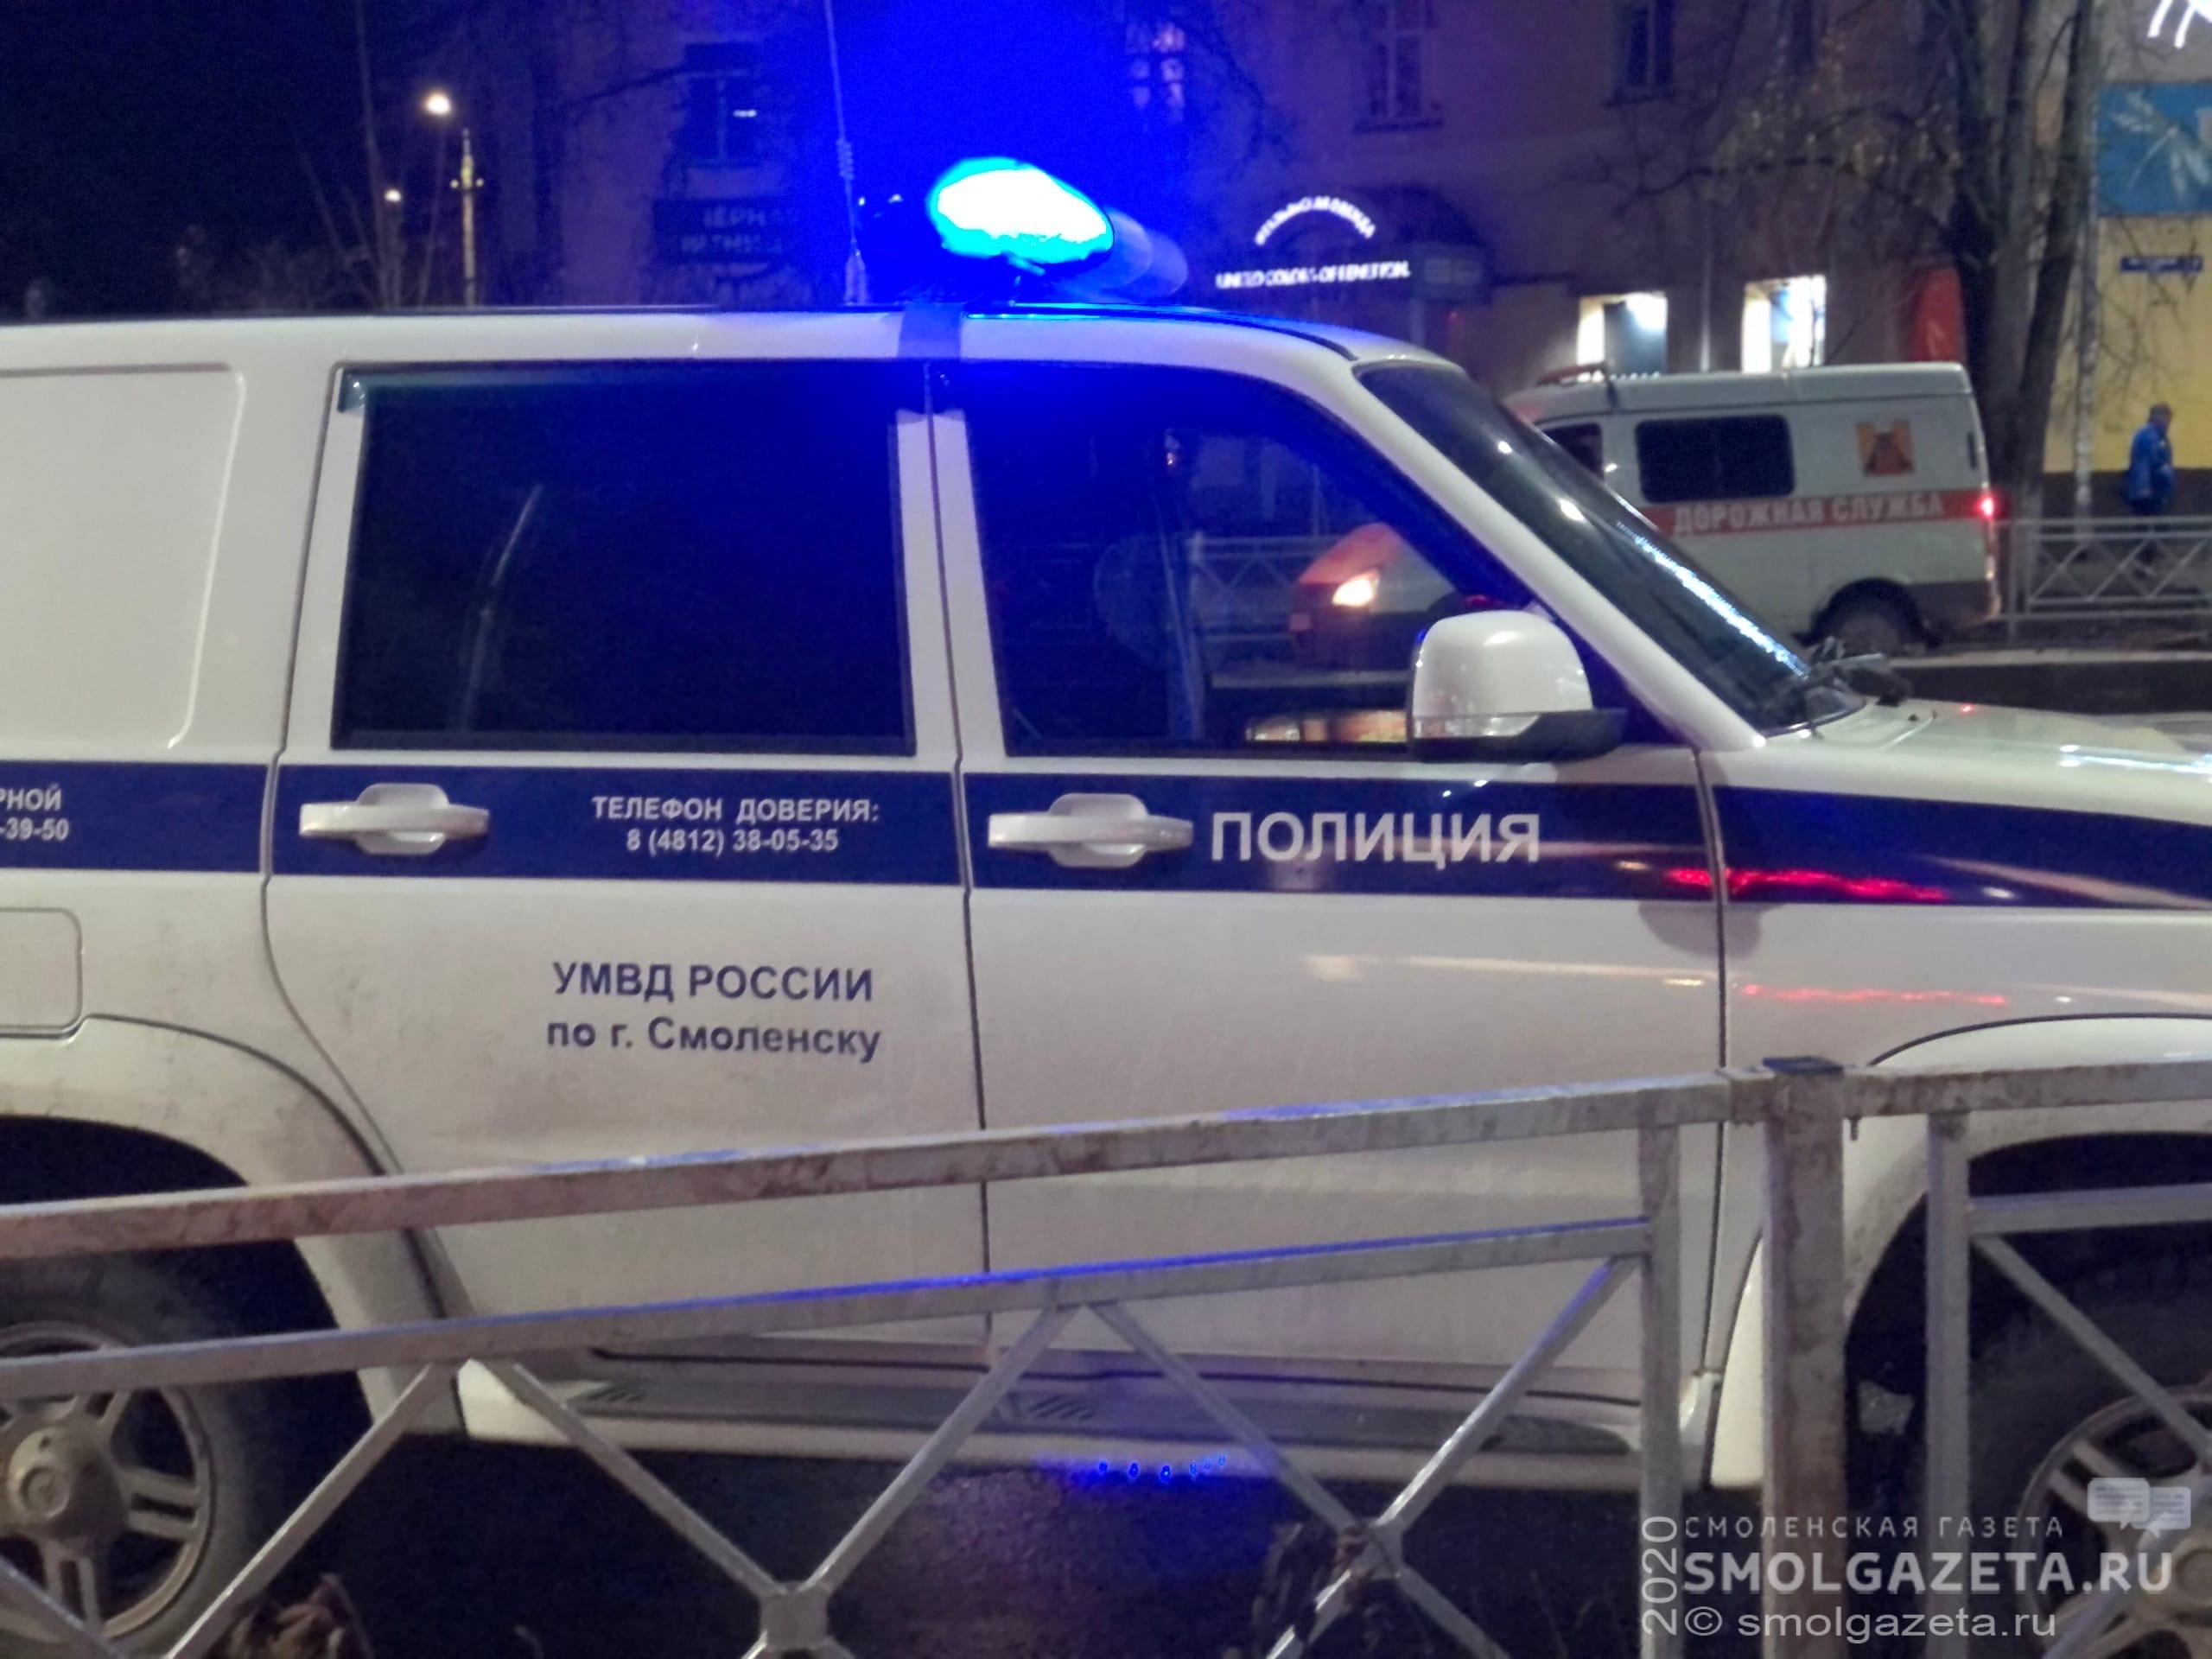 964 нарушения ПДД выявили в Смоленской области за прошедшие выходные дни